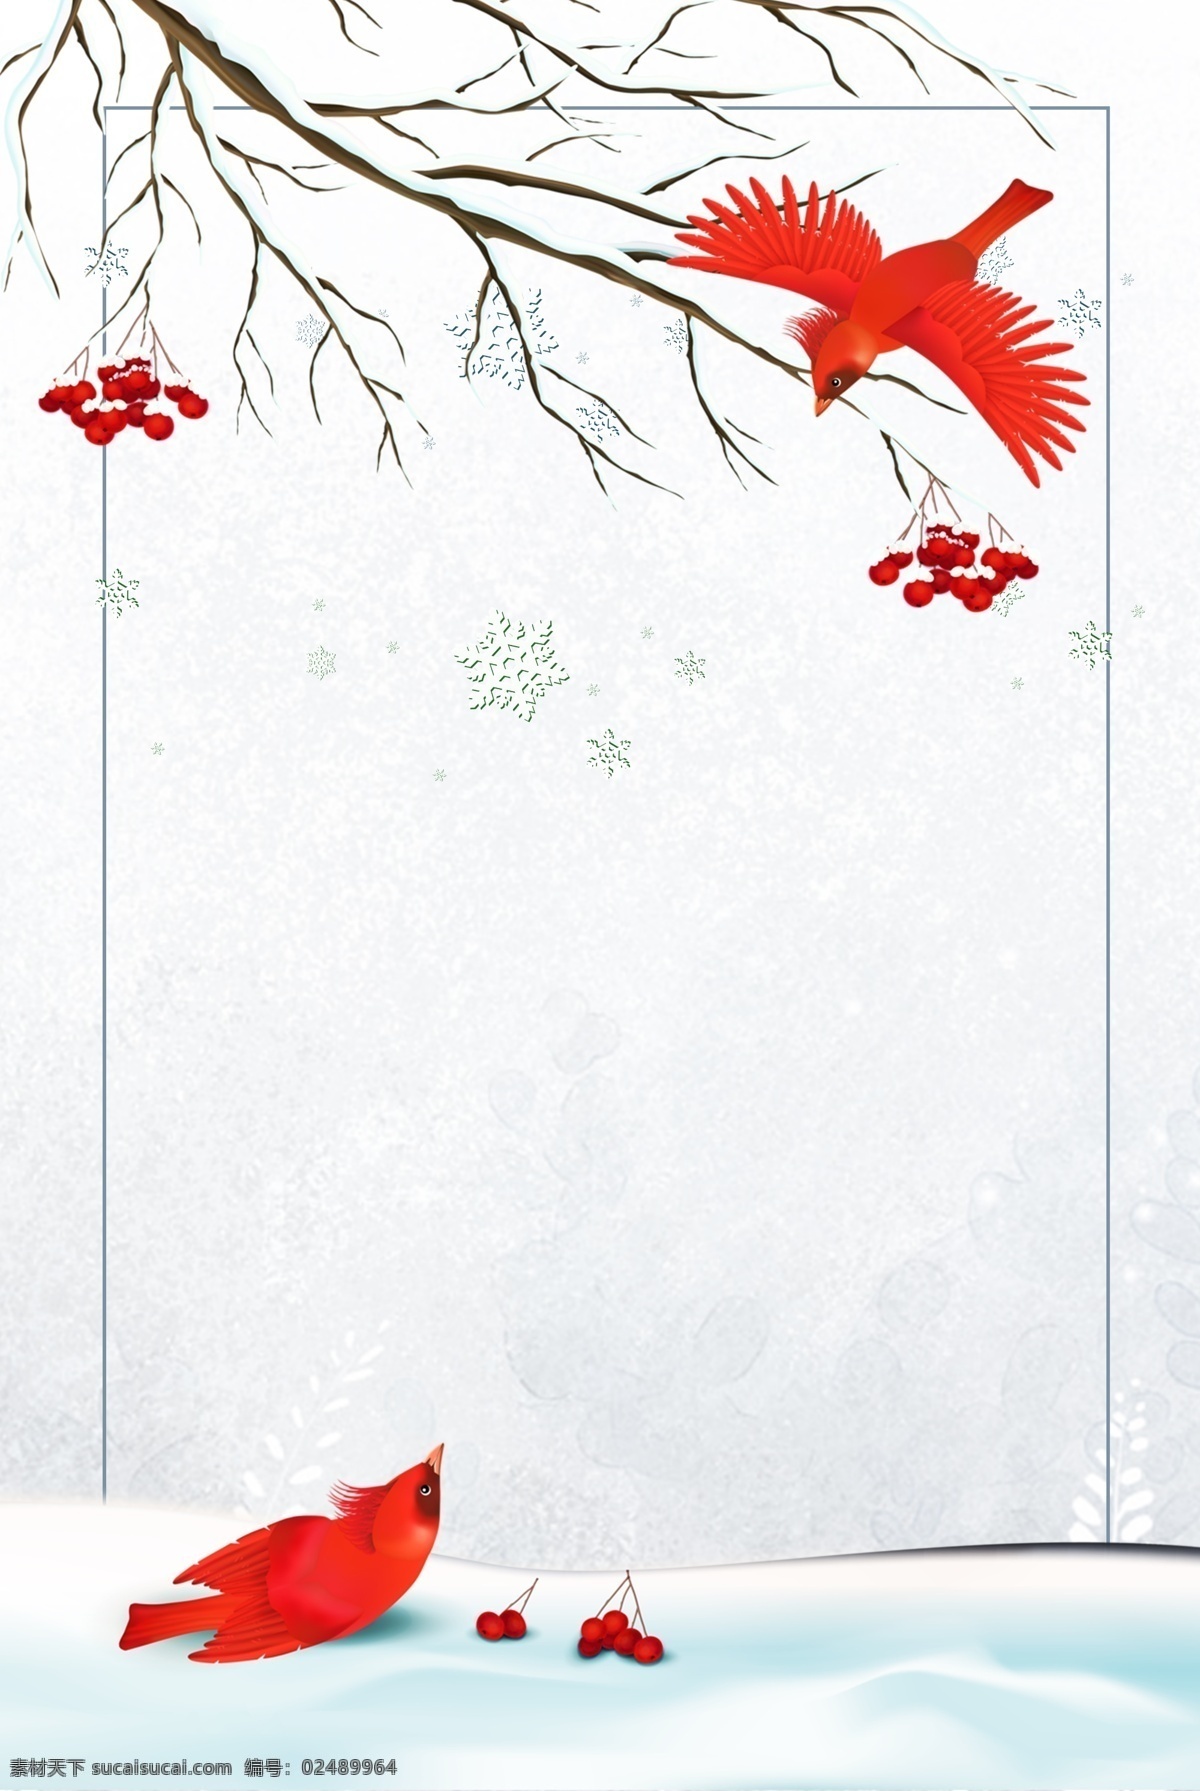 手绘 卡通 雪景 圣诞 背景 图 平安夜 礼盒 电商 海报 淘宝 天猫 banner 鹿子 圣诞老人 下雪 梦幻